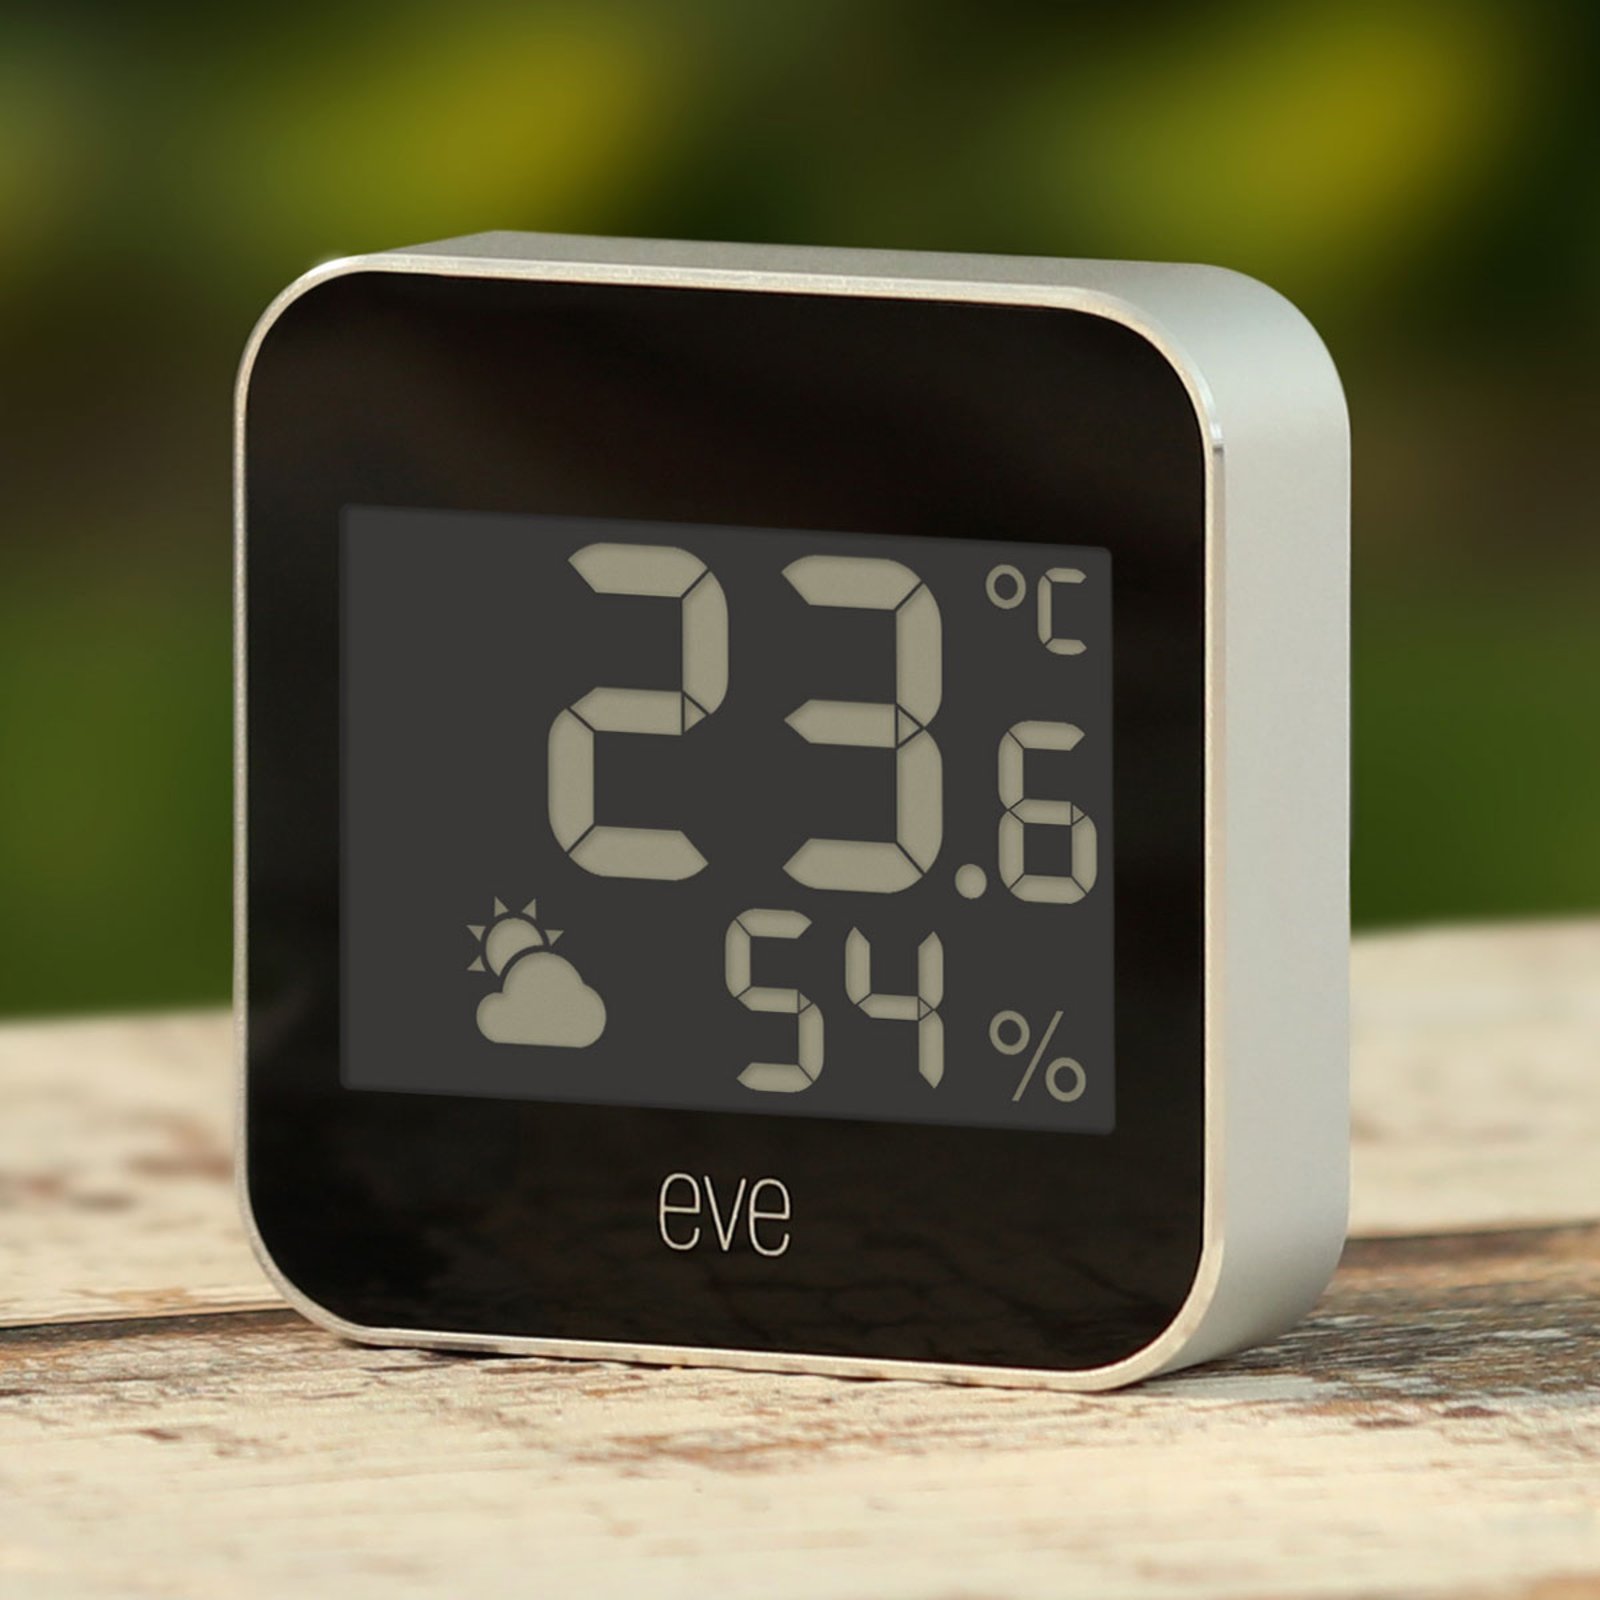 Eve Weather Smart Home estación clima, Thread